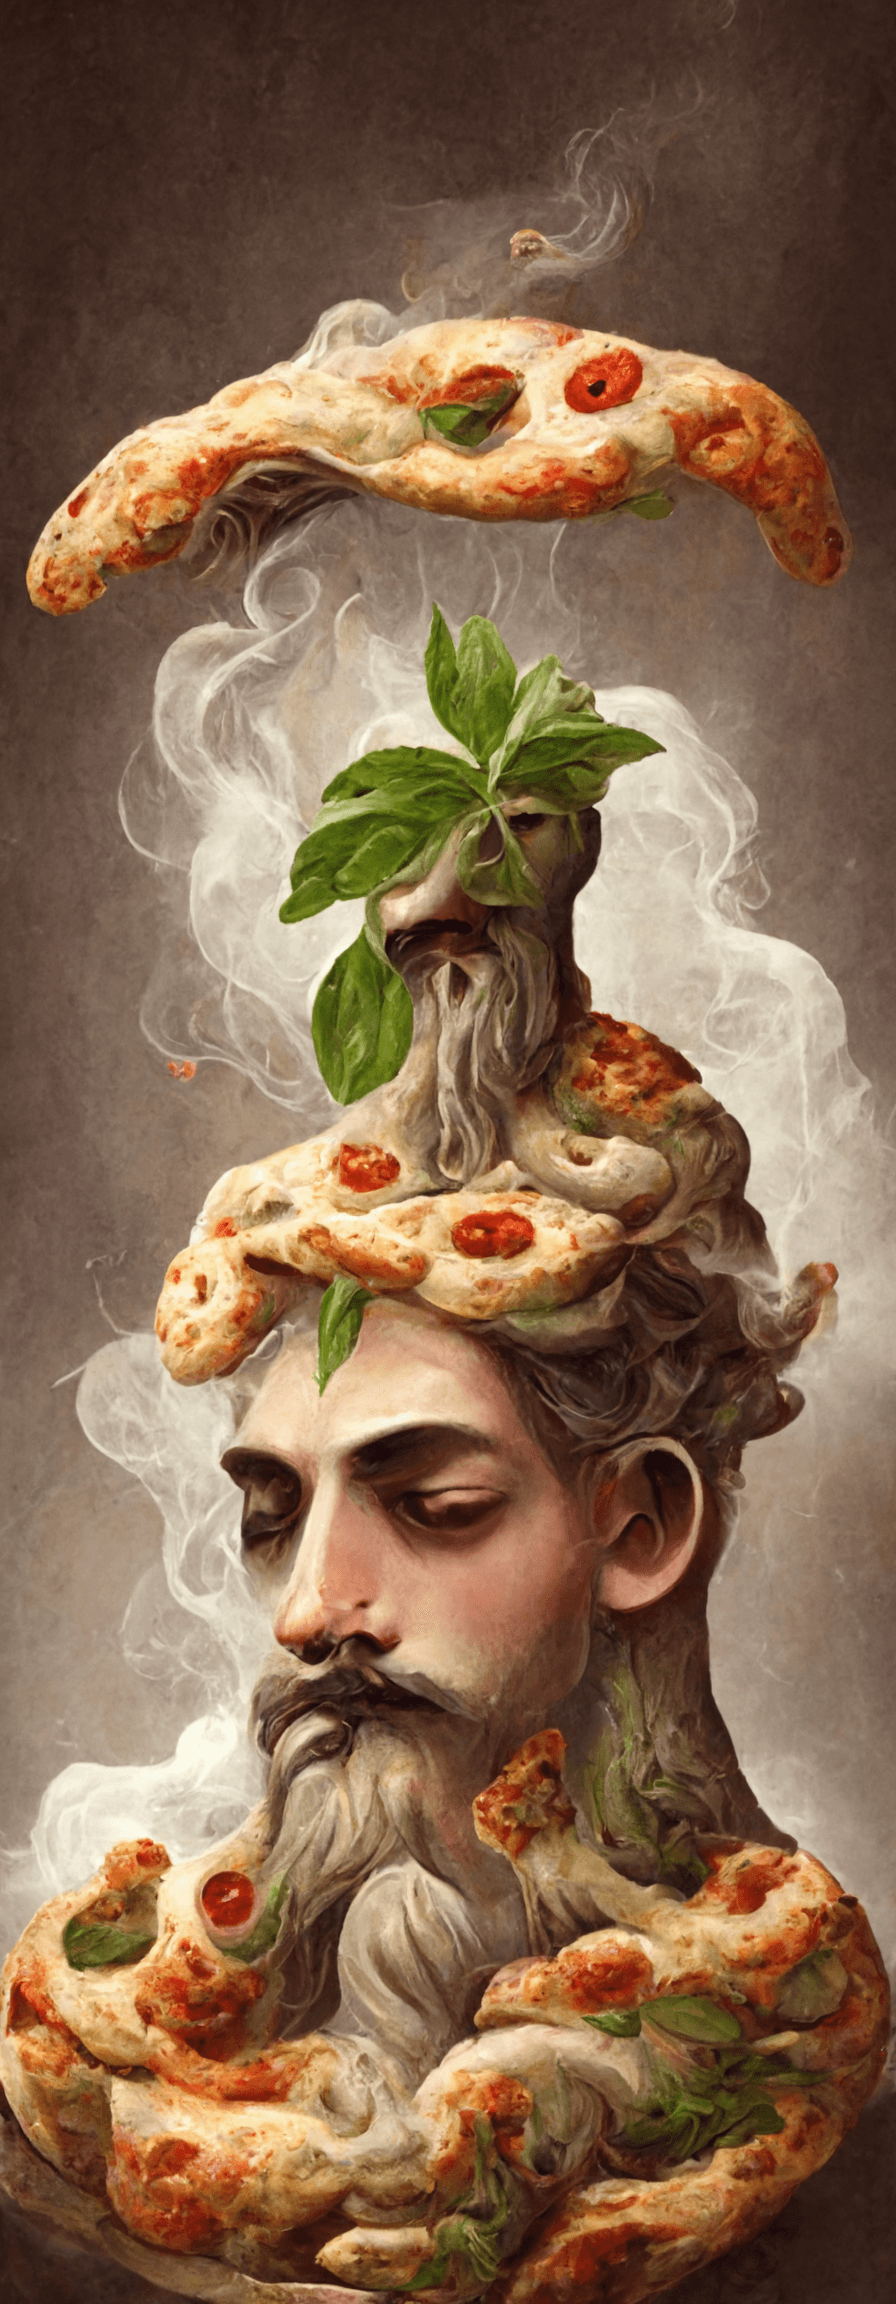 The Italian God of Pizza